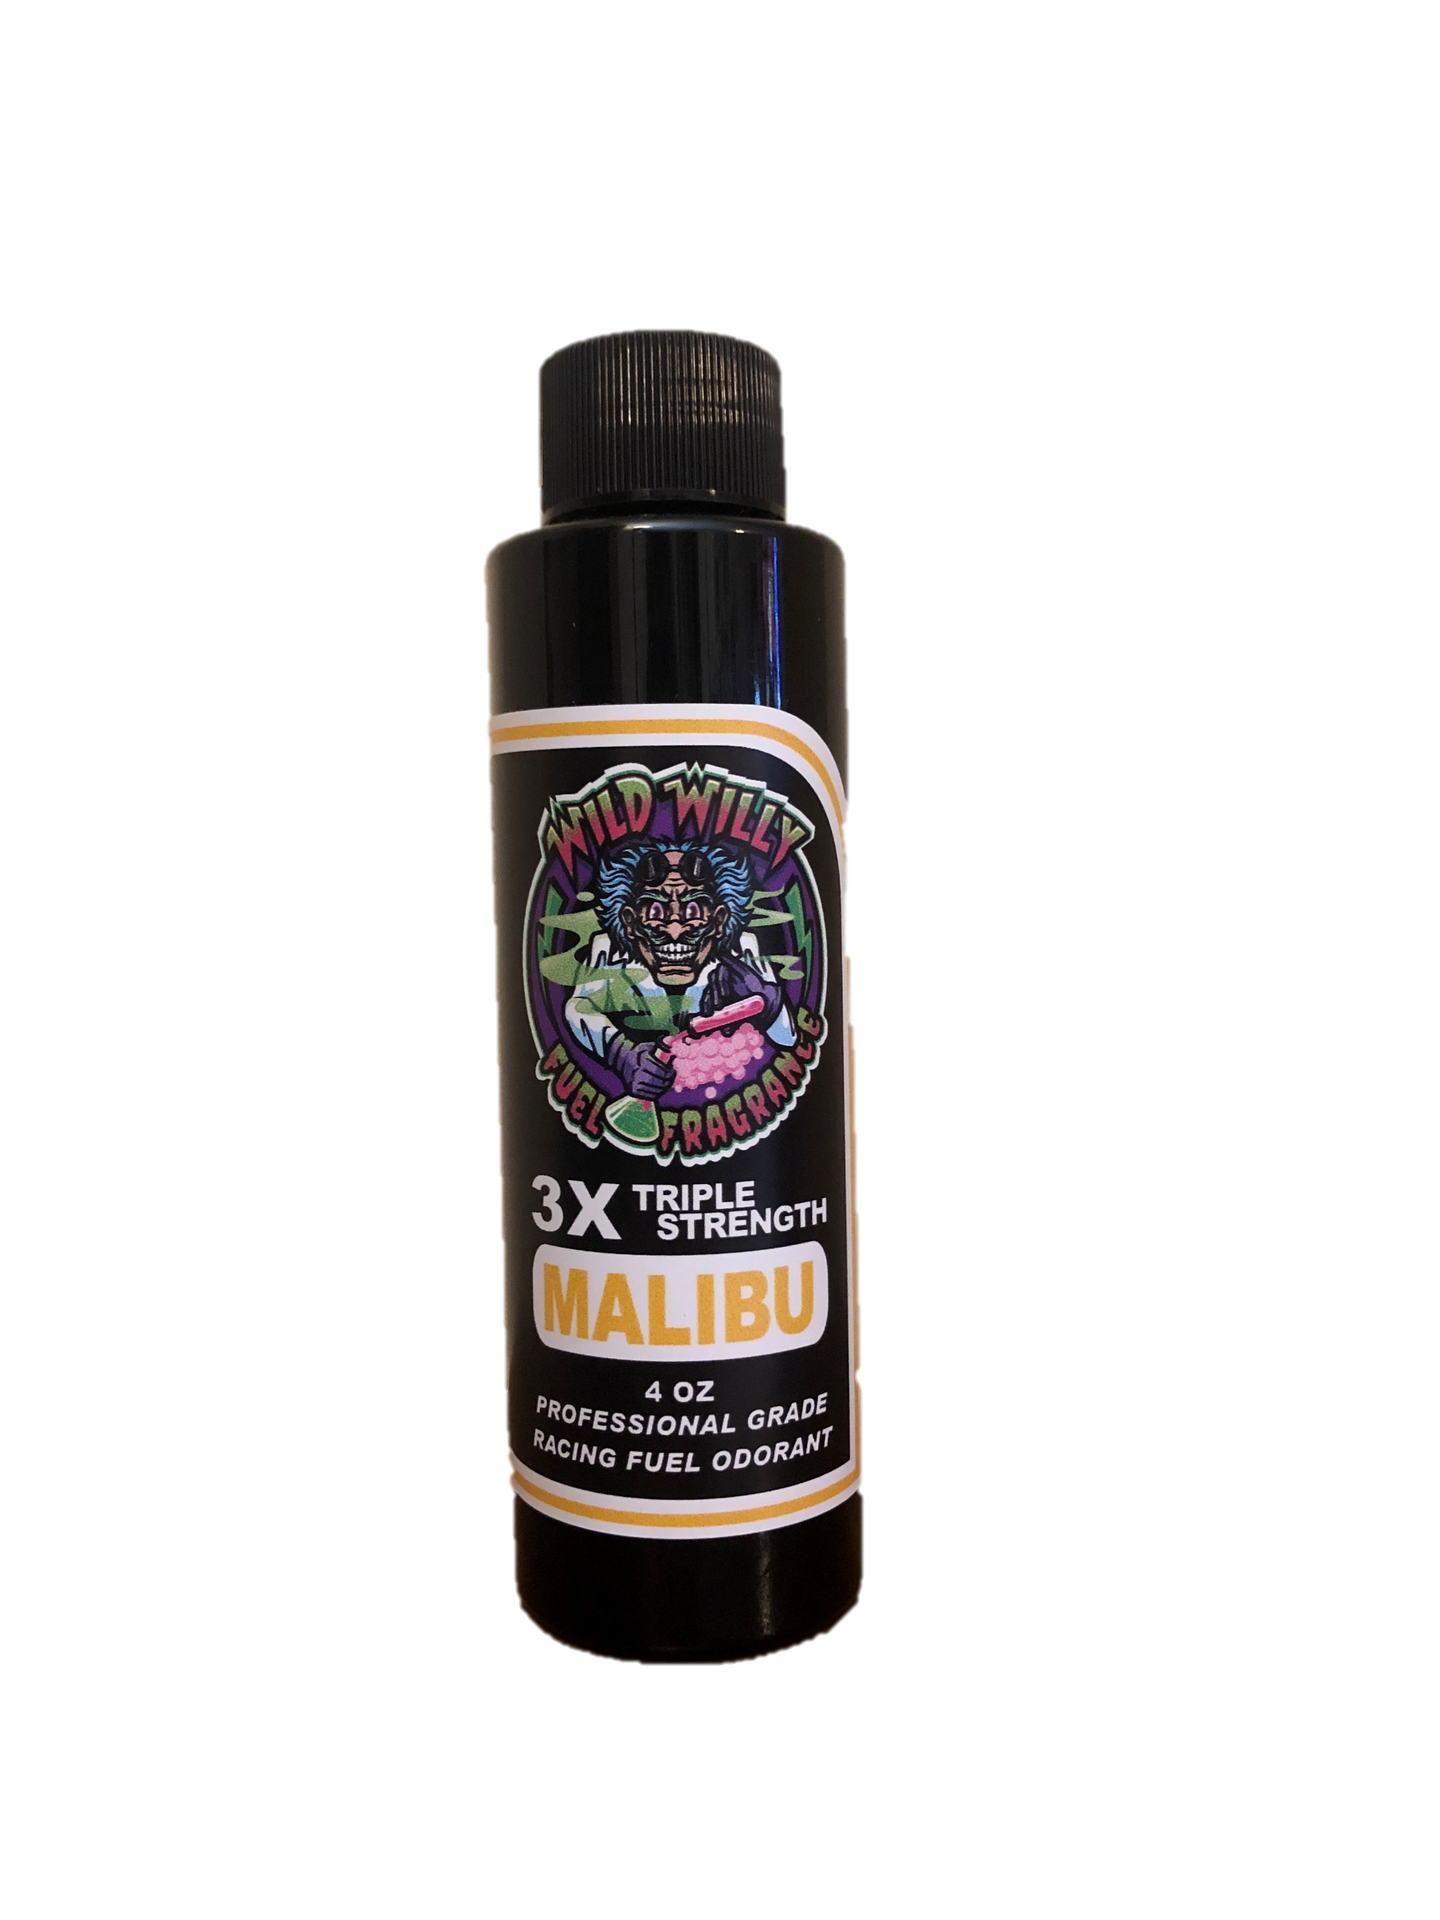 Malibu - Wild Willy Fuel Fragrance - 3X Triple Strength!